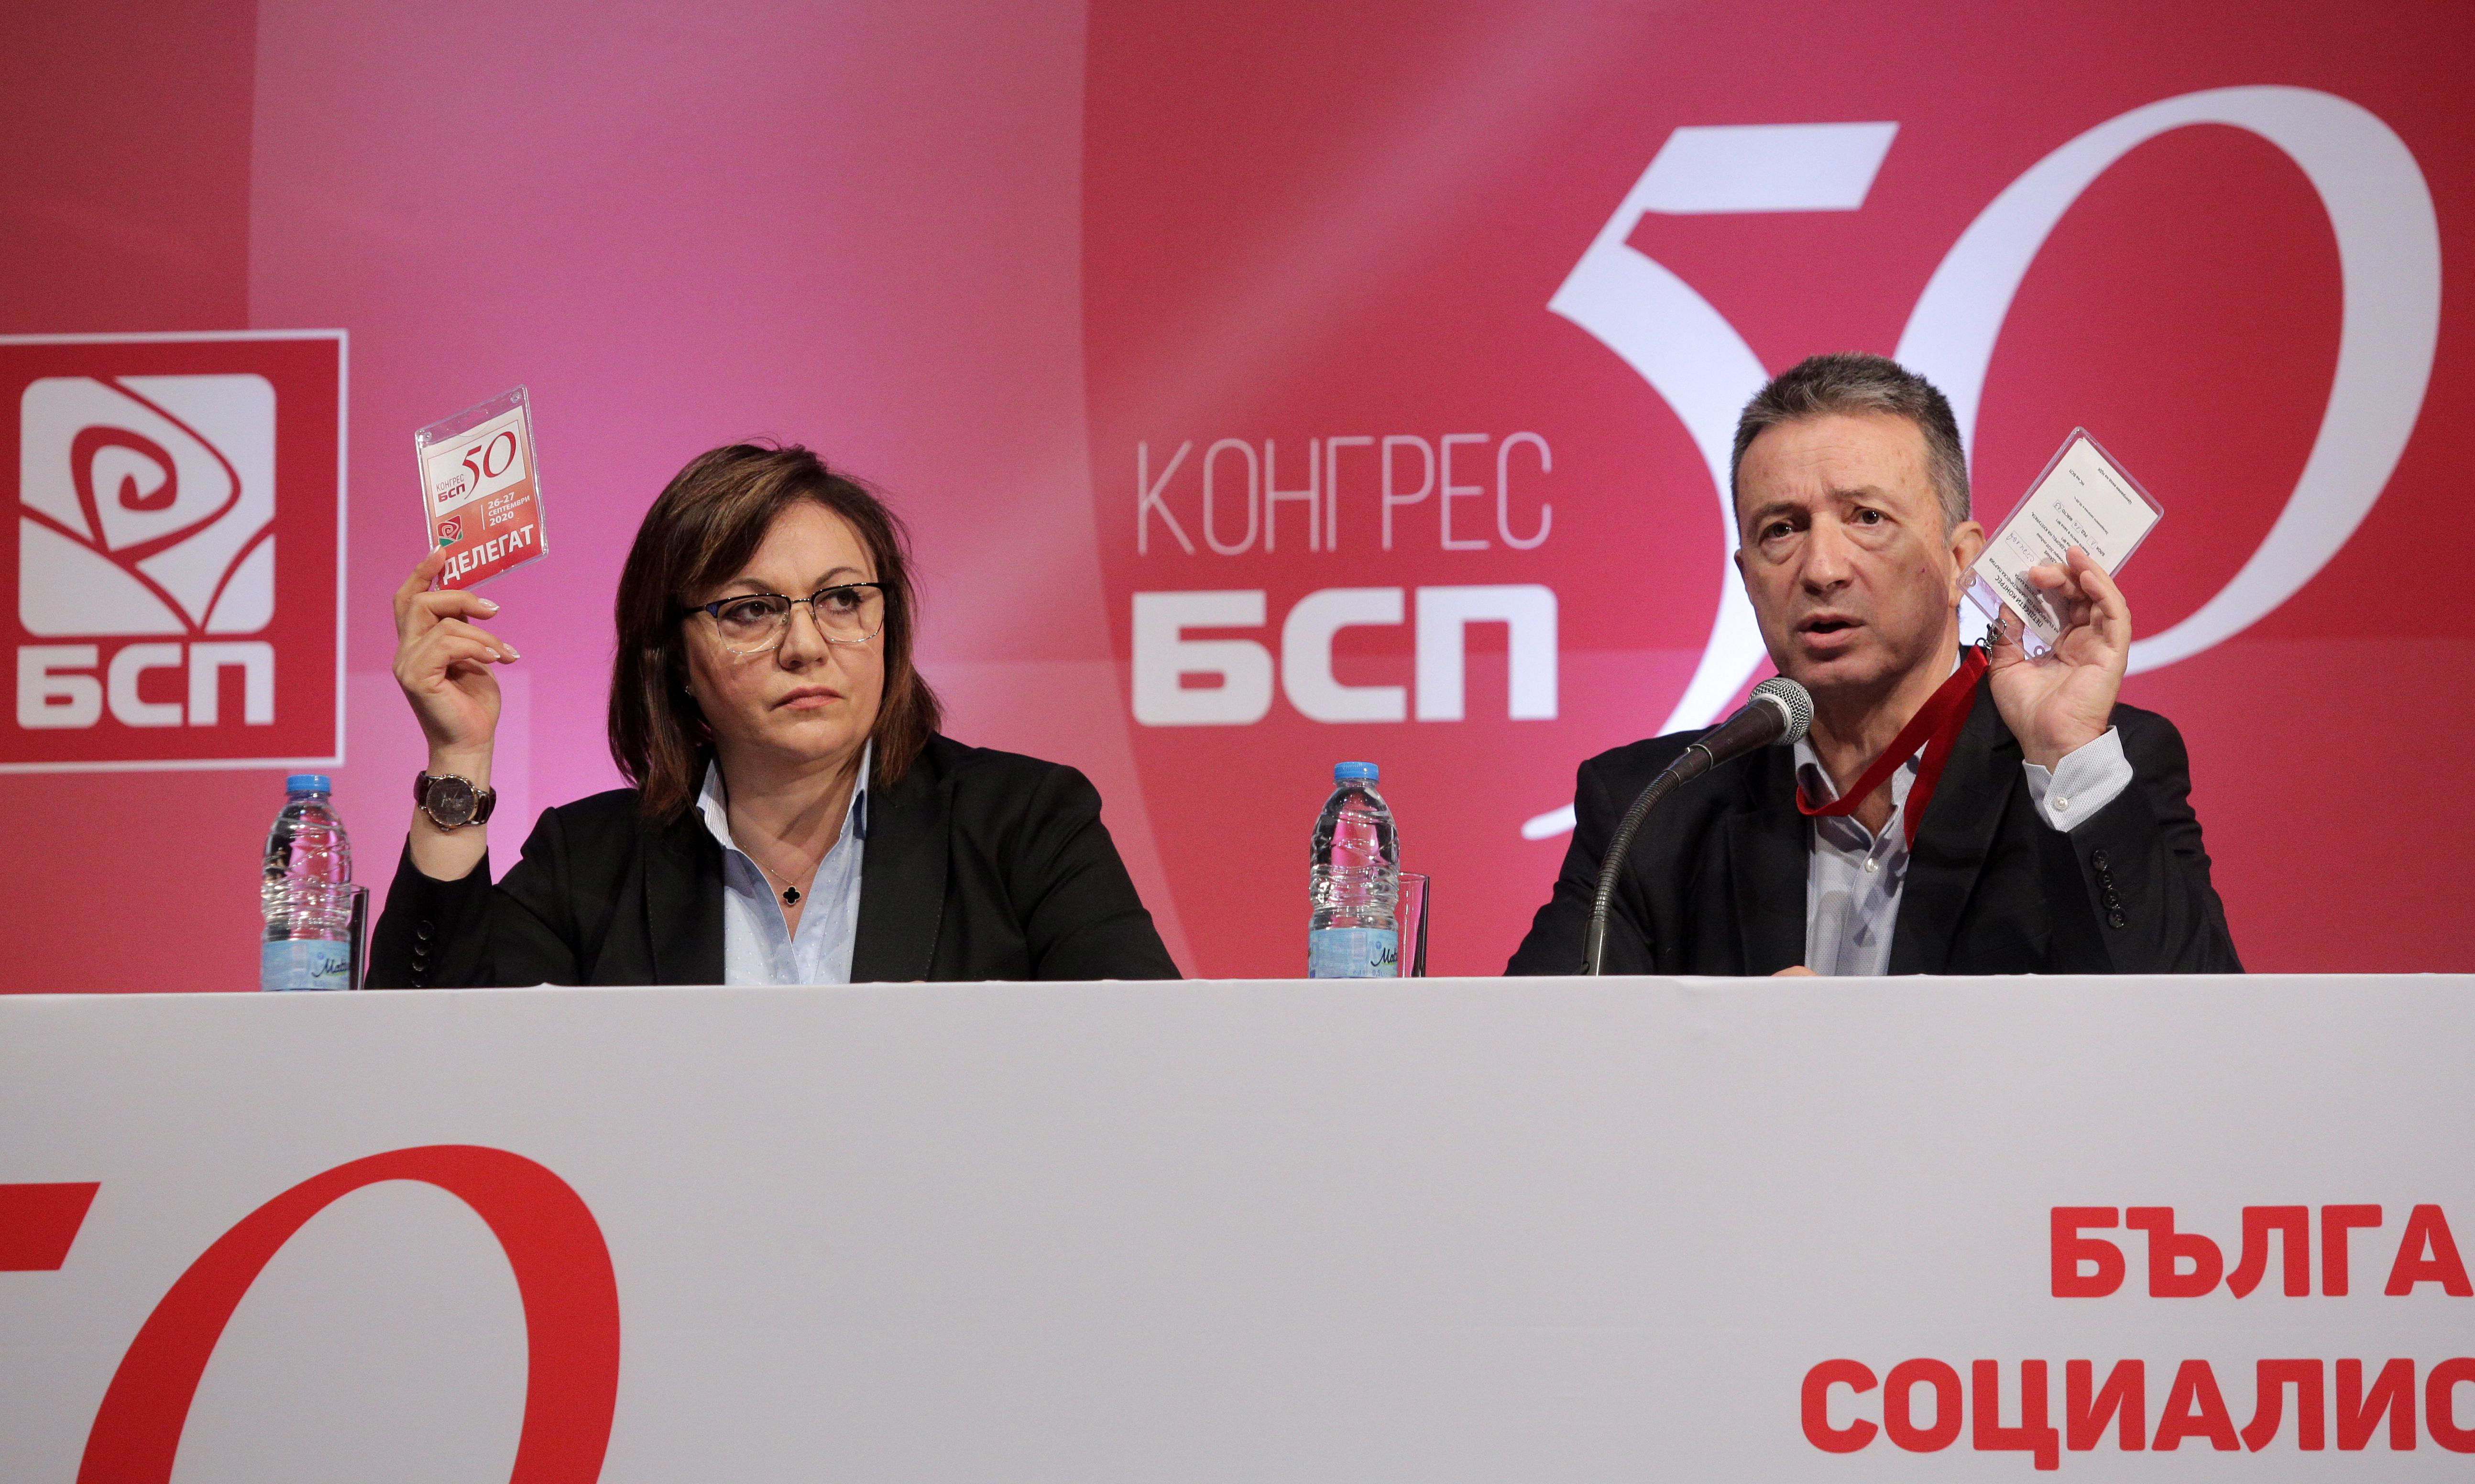 50 ият конгрес на БСП избра Националния съвет на партията В